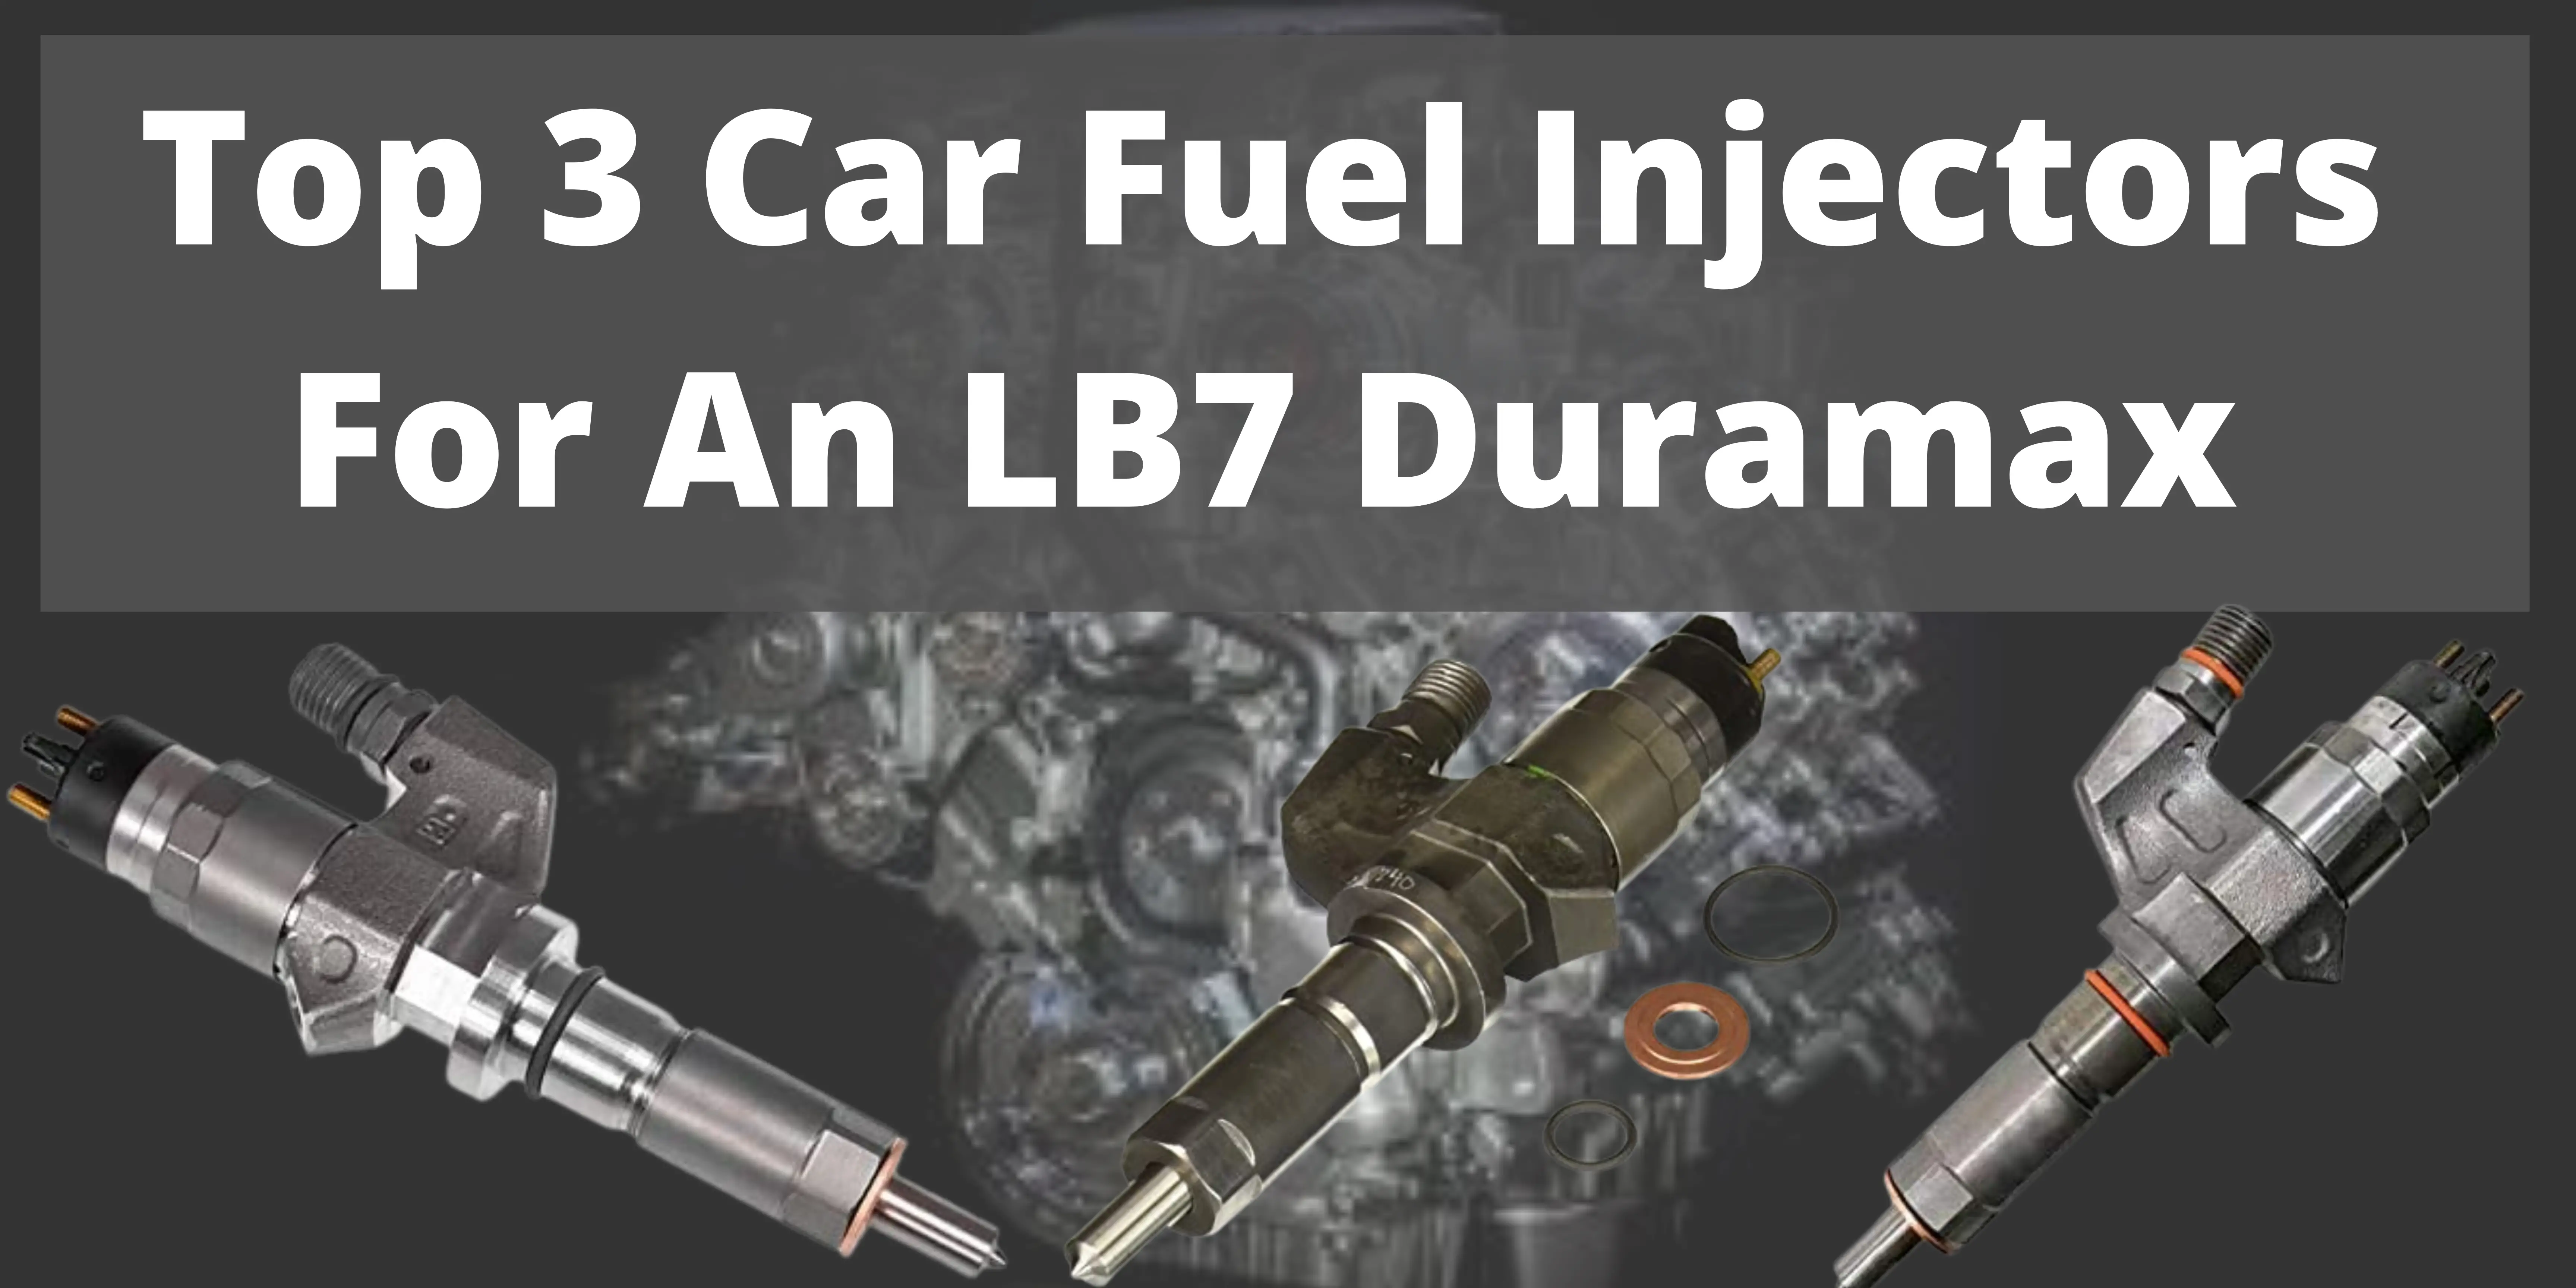 Car Fuel Injectors for an LB7 Duramax